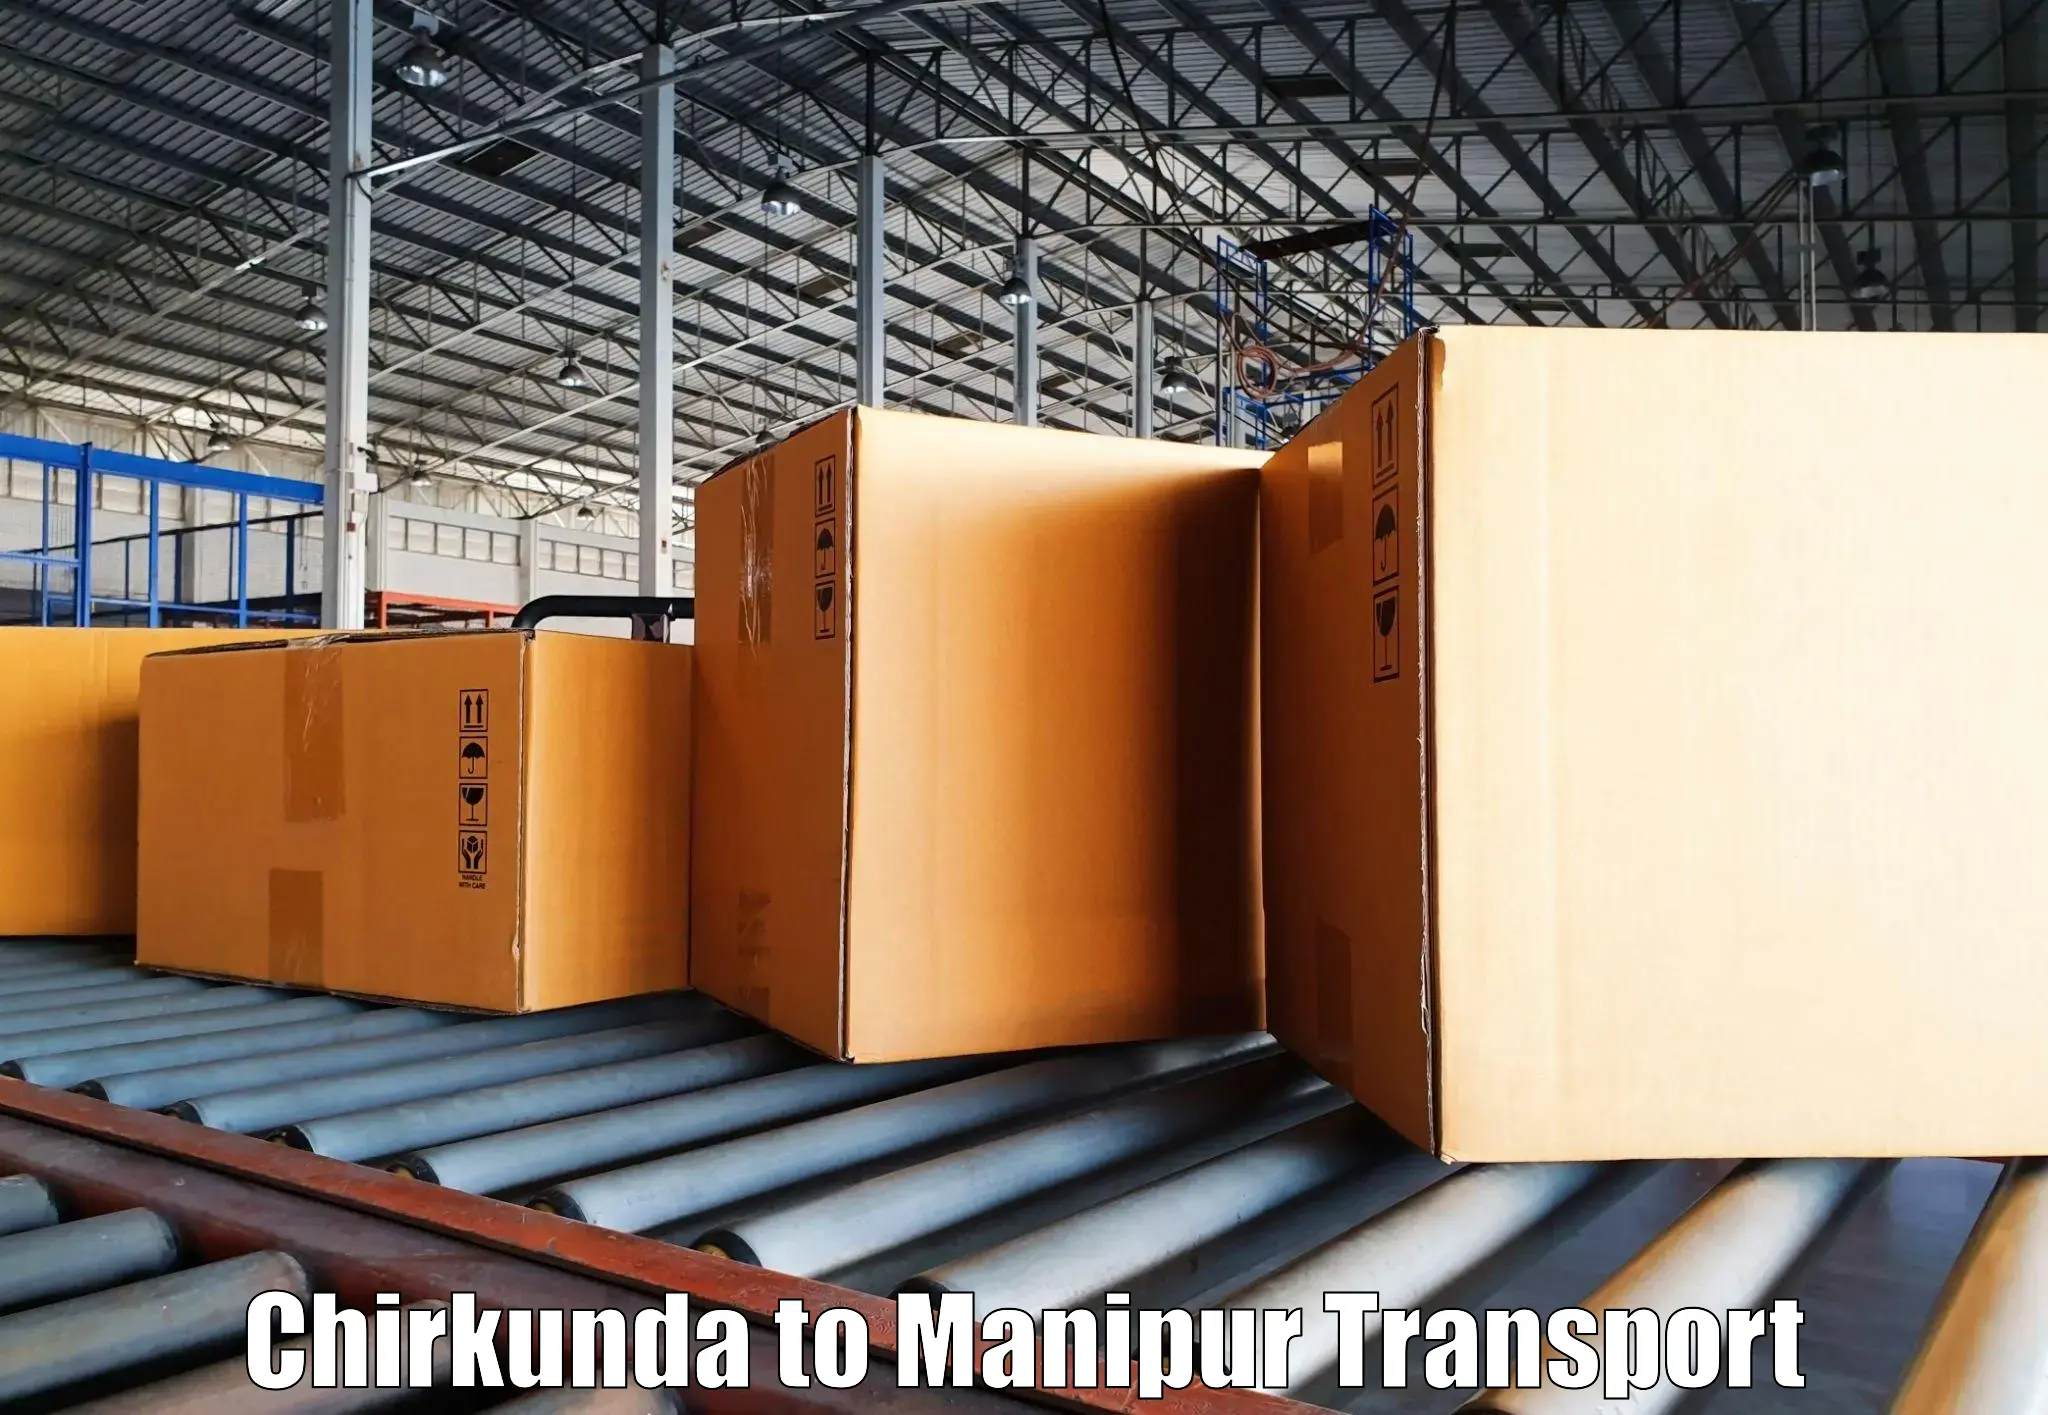 Daily transport service Chirkunda to Moirang